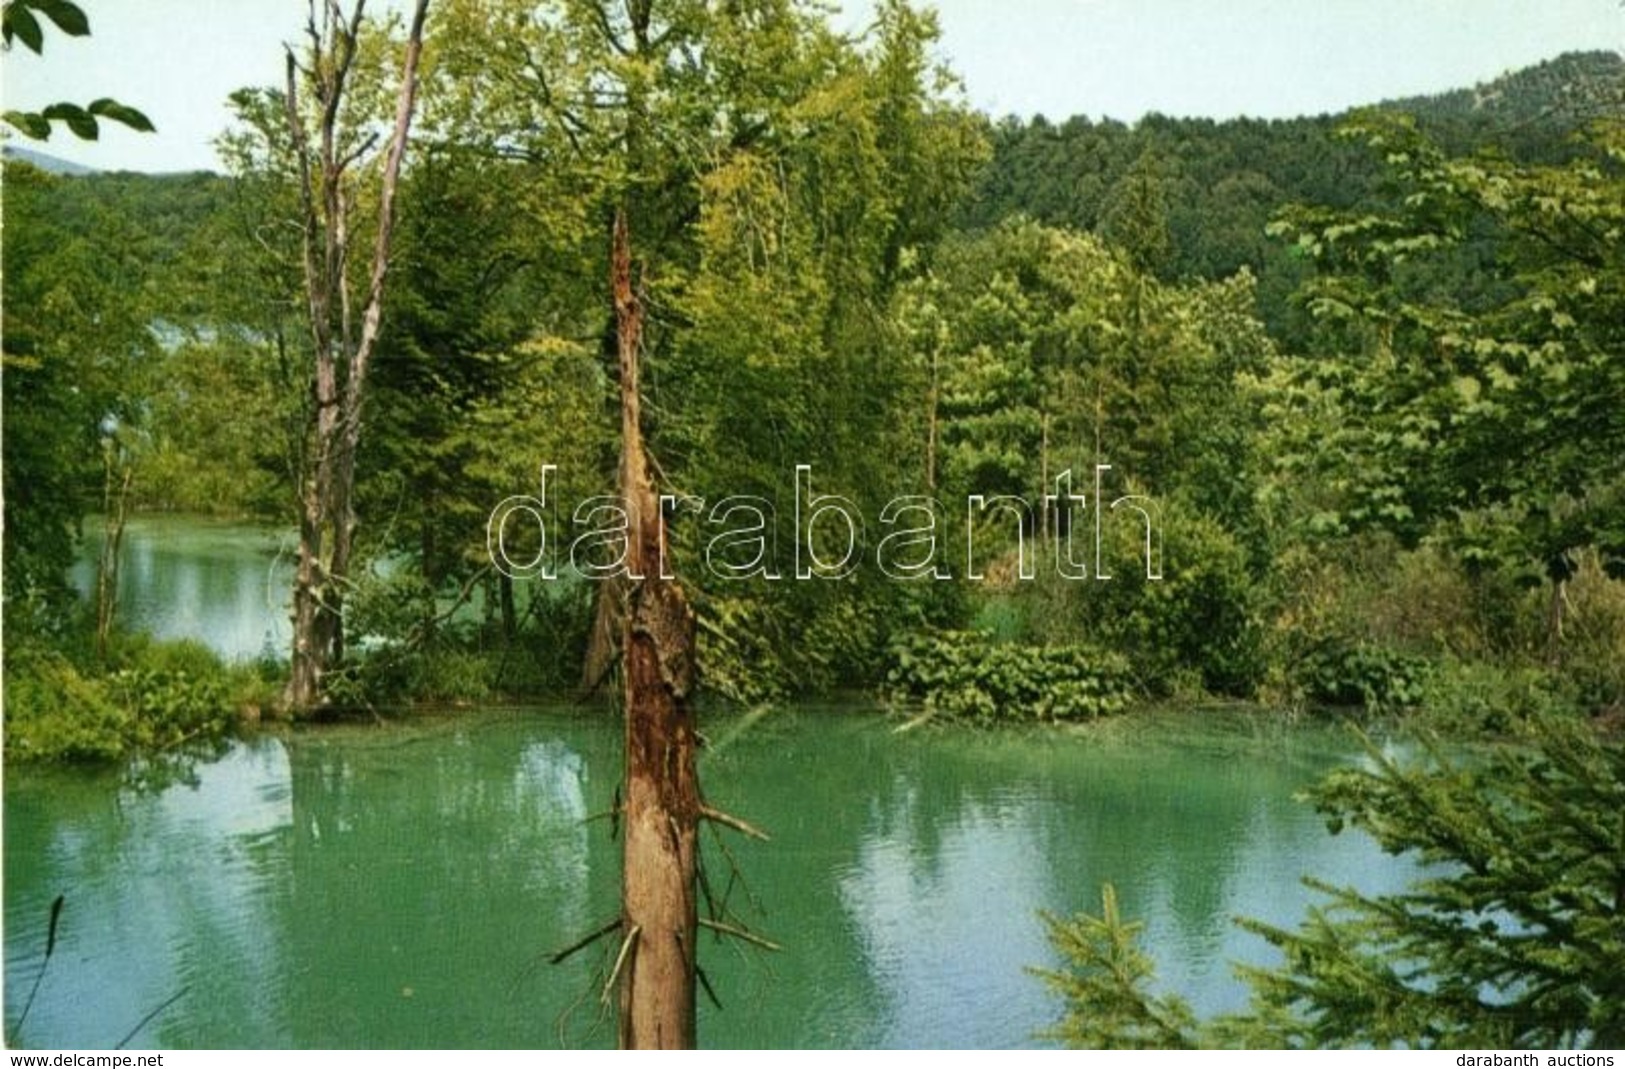 ** 5 Db MODERN Horvát Képeslap A Plitvicei Tavakról / 5 Modern Croatian Postcards From Plitvice Lakes - Unclassified